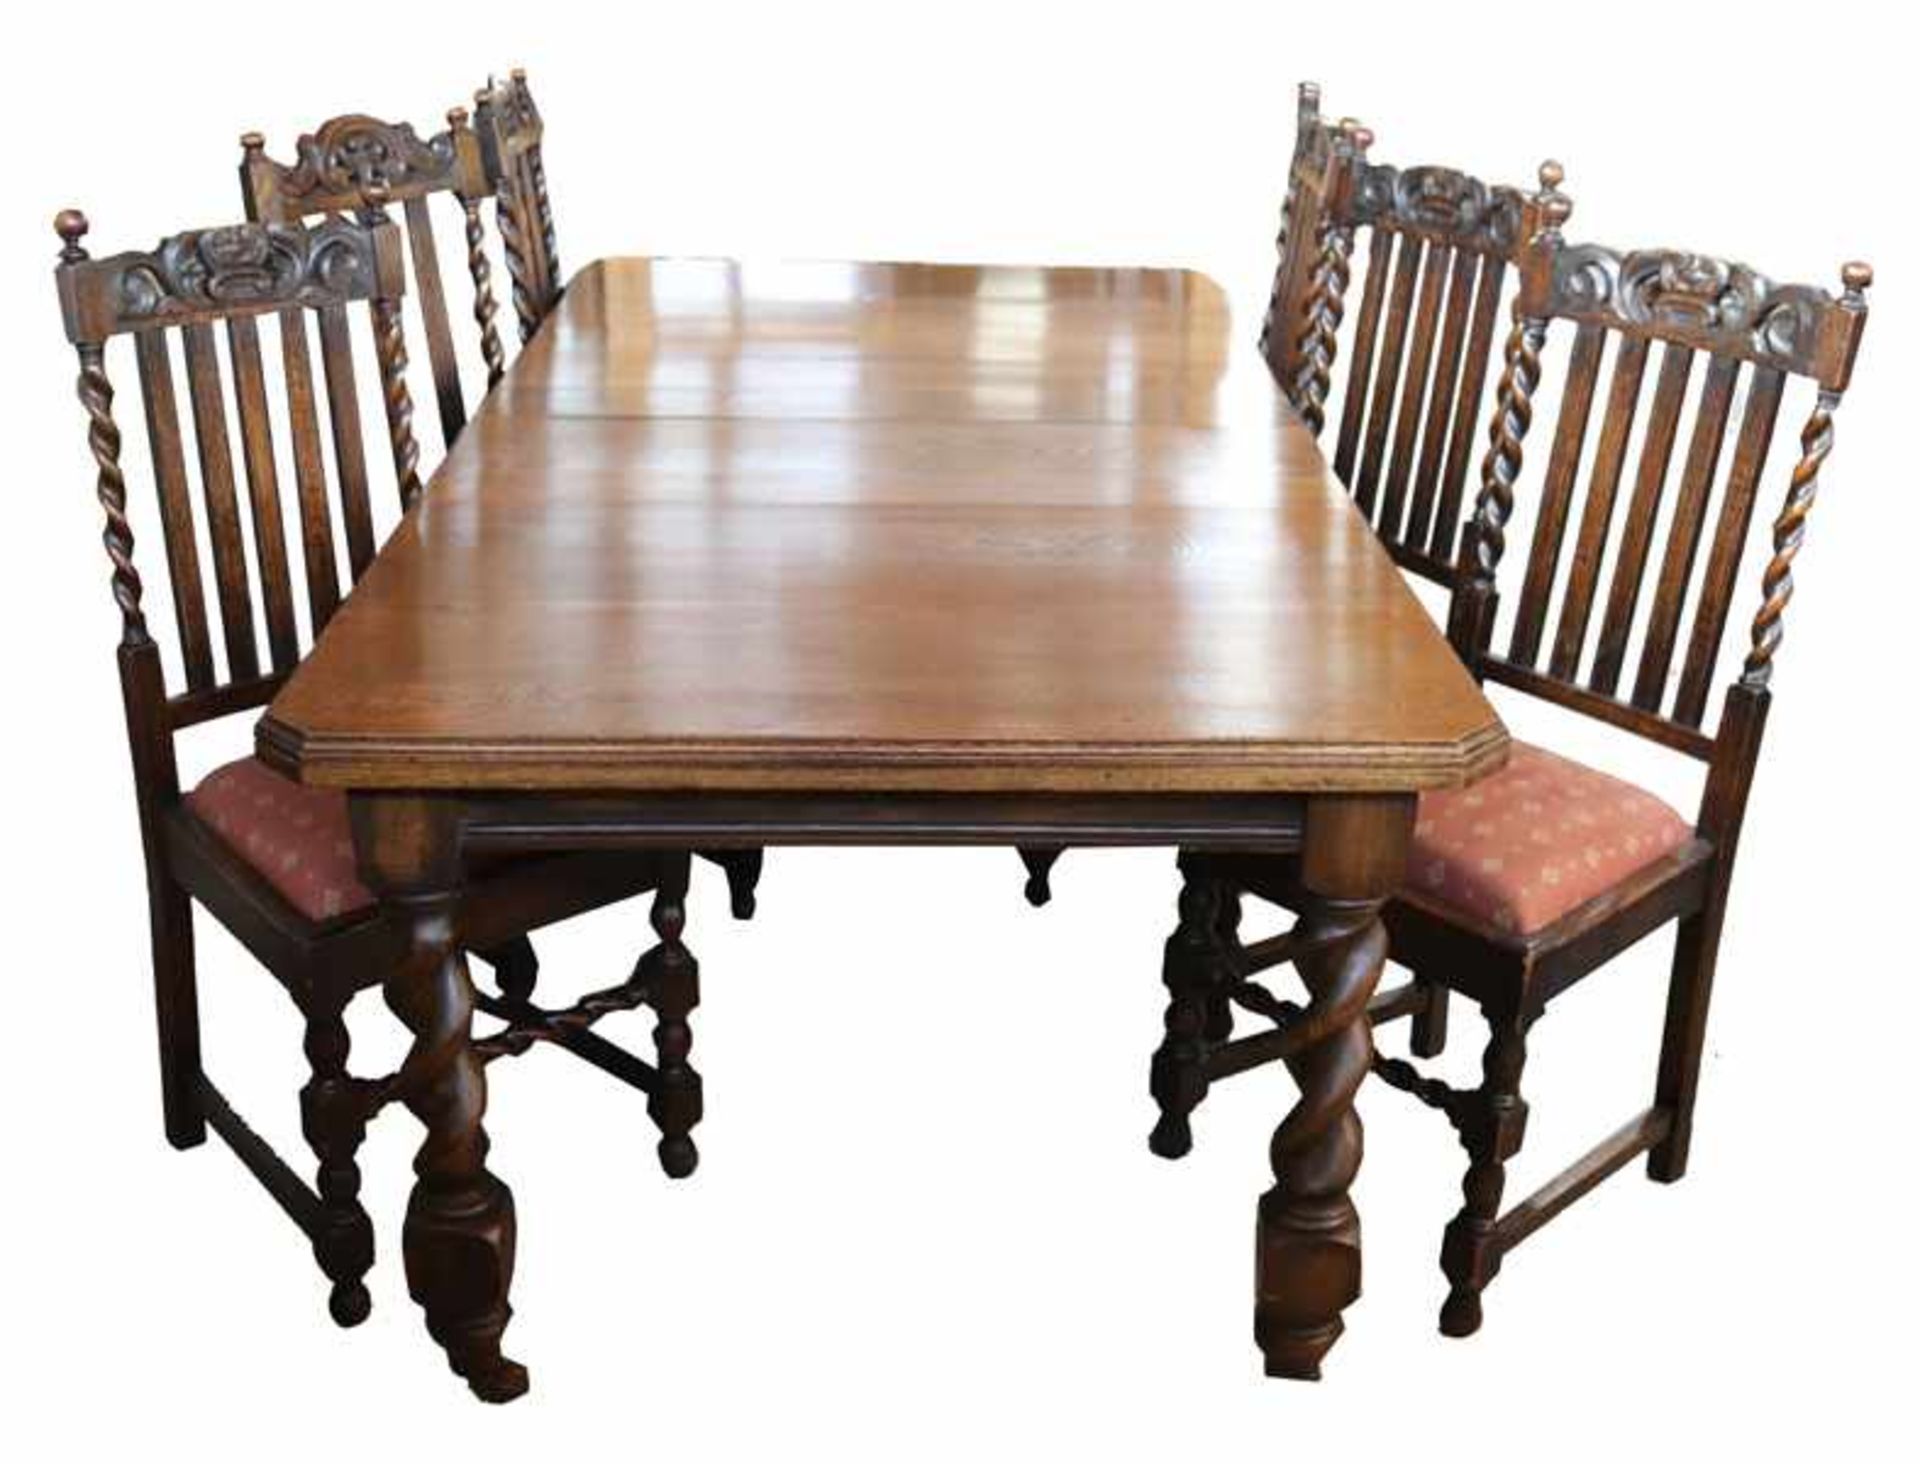 Englischer Tisch, Eiche, gedrechselte Beine auf Rollen mit Kurbel, H 74 cm, B 207 cm, T 100 cm,